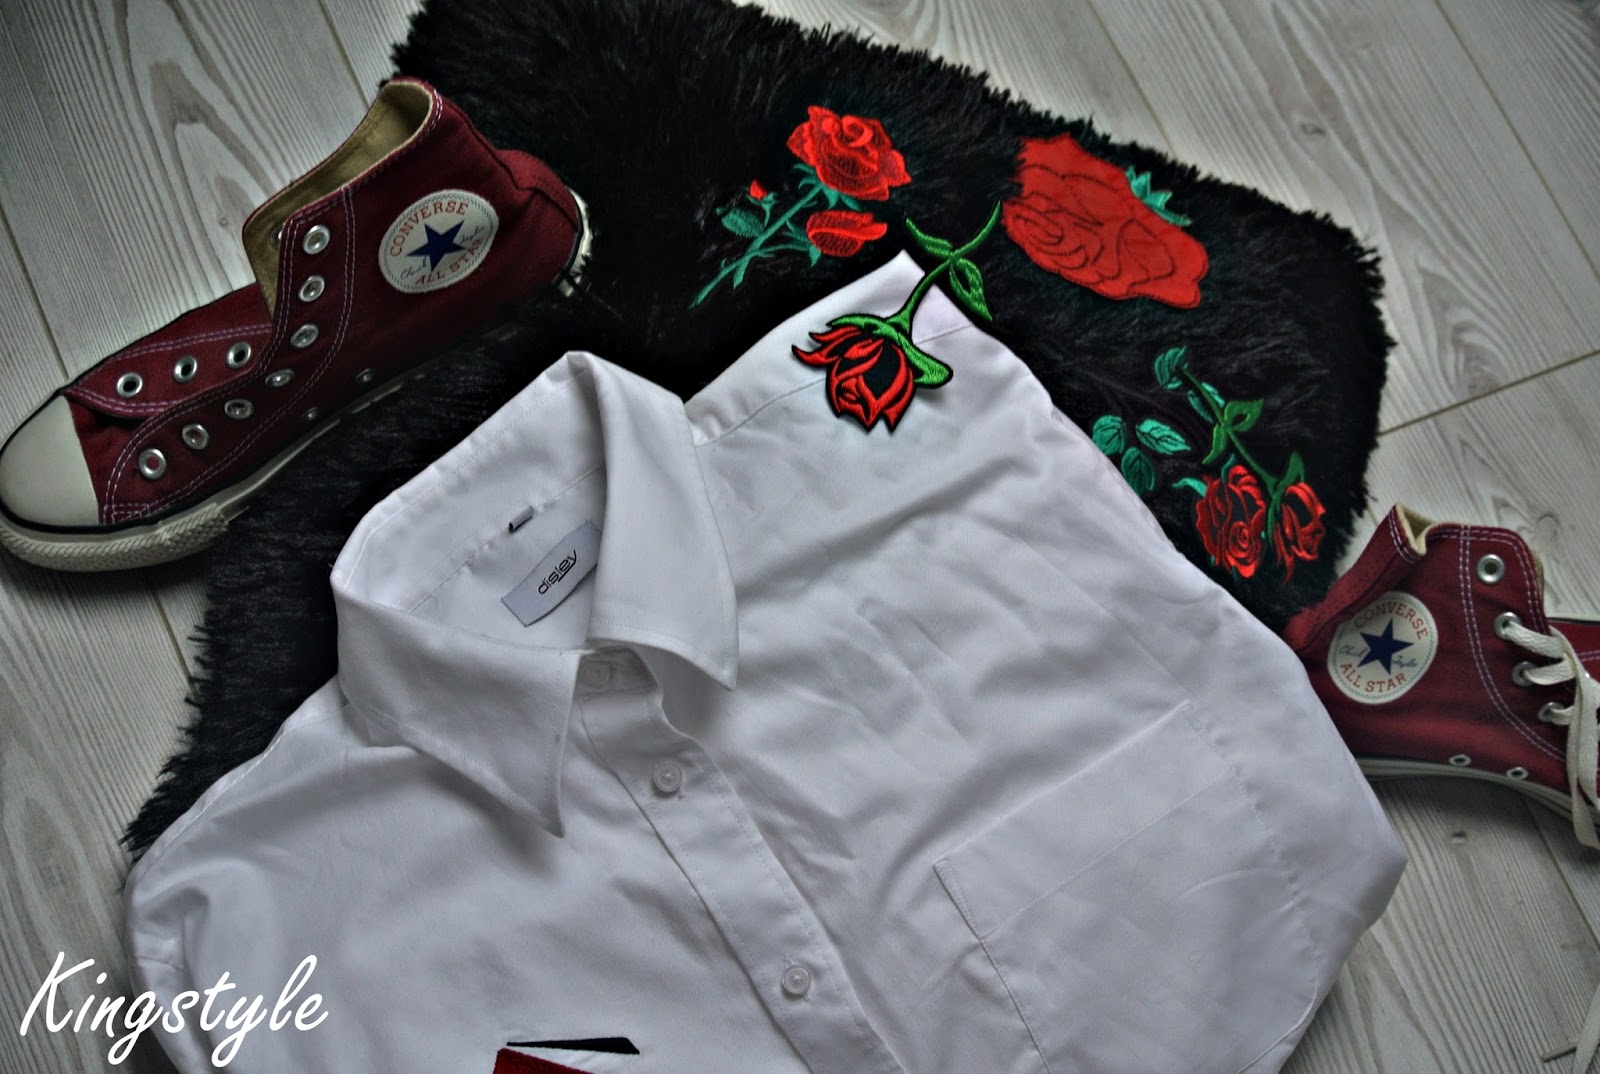 89ღ. Decorate Flowers On White Casual Shirt To Set With Shorts